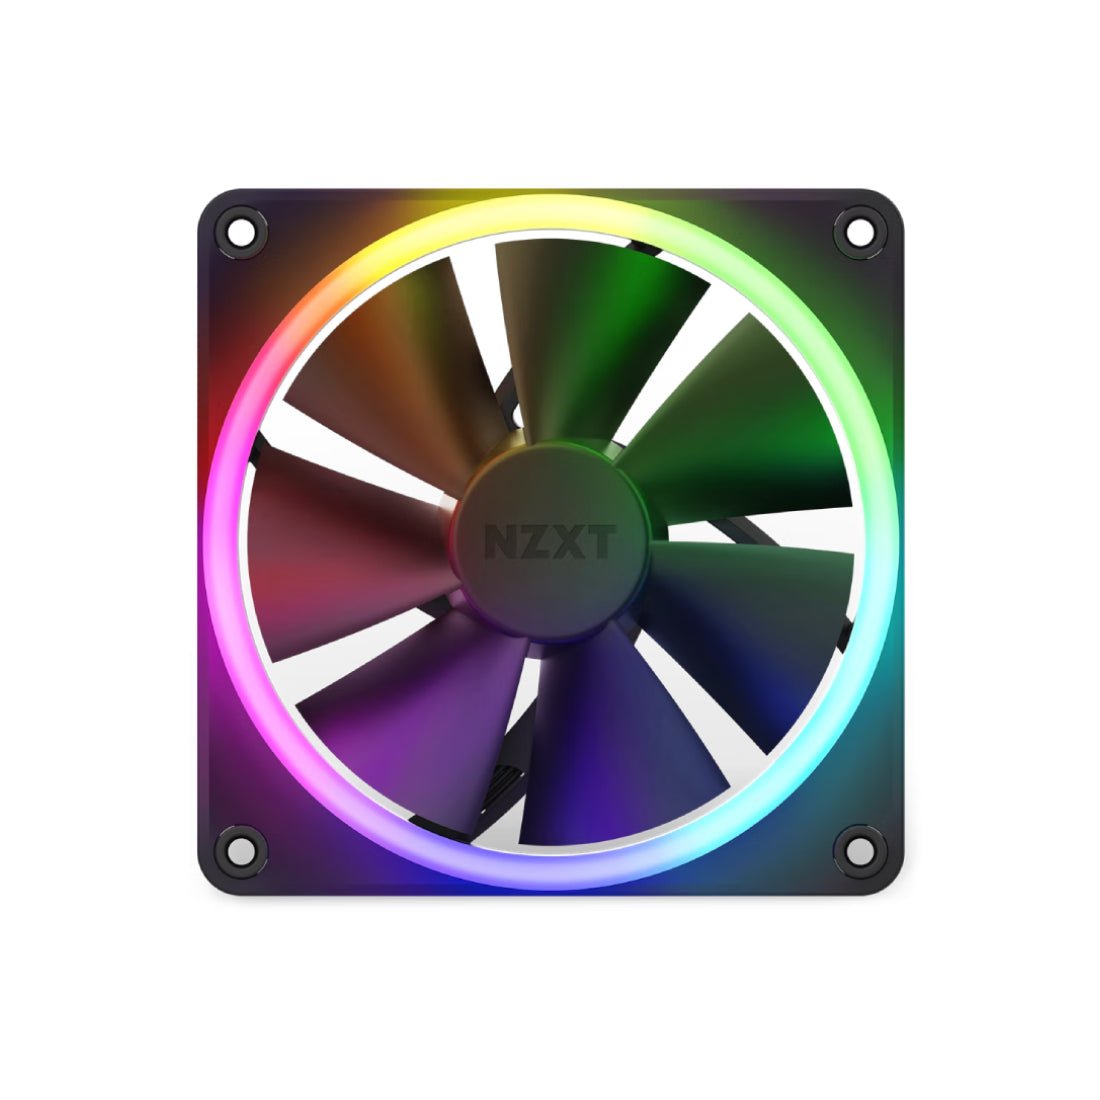 NZXT F120 120mm RGB Single Fan - Black - مروحة تبريد - Store 974 | ستور ٩٧٤